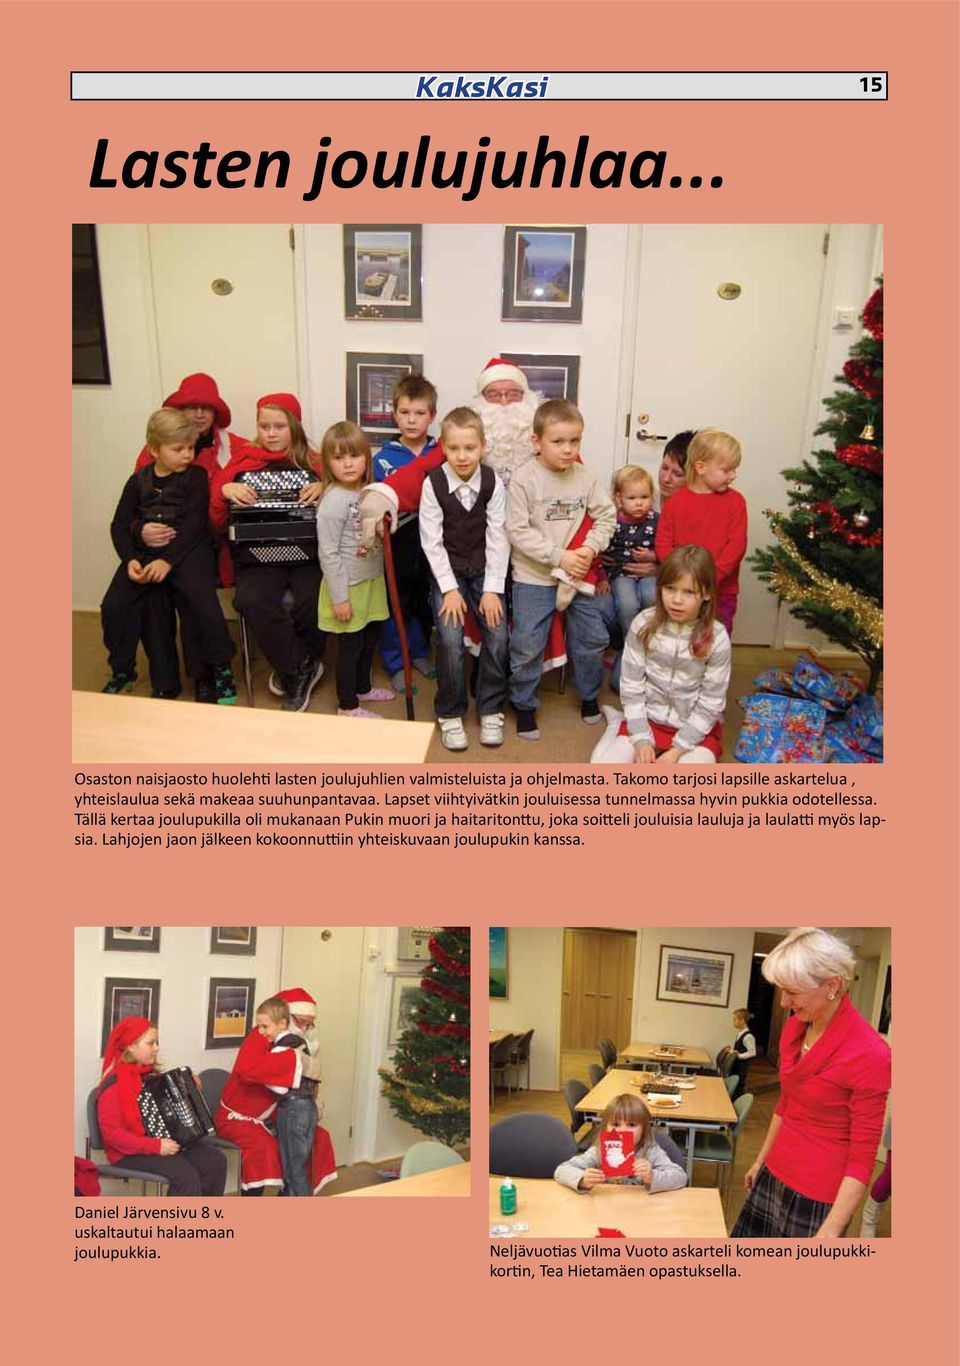 Tällä kertaa joulupukilla oli mukanaan Pukin muori ja haitaritonttu, joka soitteli jouluisia lauluja ja laulatti myös lapsia.